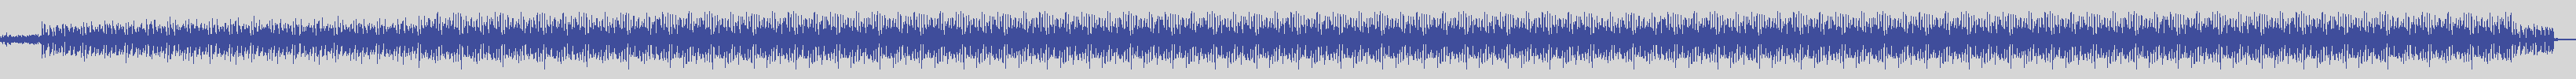 noclouds_chillout [NOC064] Jacques Divo - Sapore [Original Mix] audio wave form